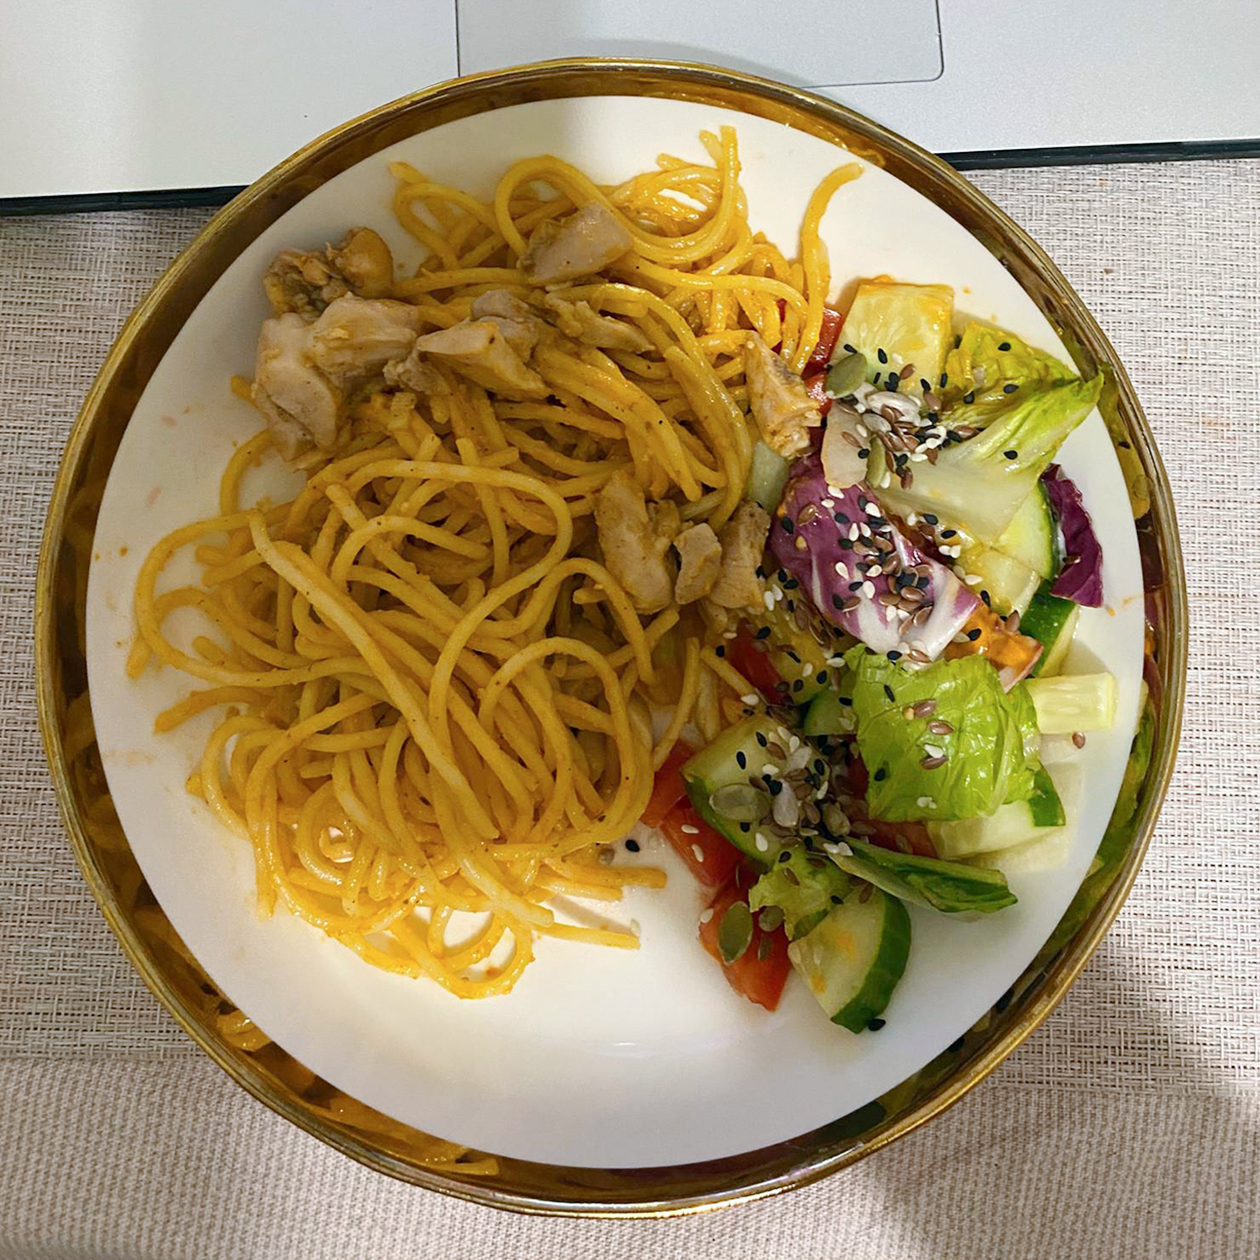 Спагетти, курица и овощи. Для меня идеальный ужин